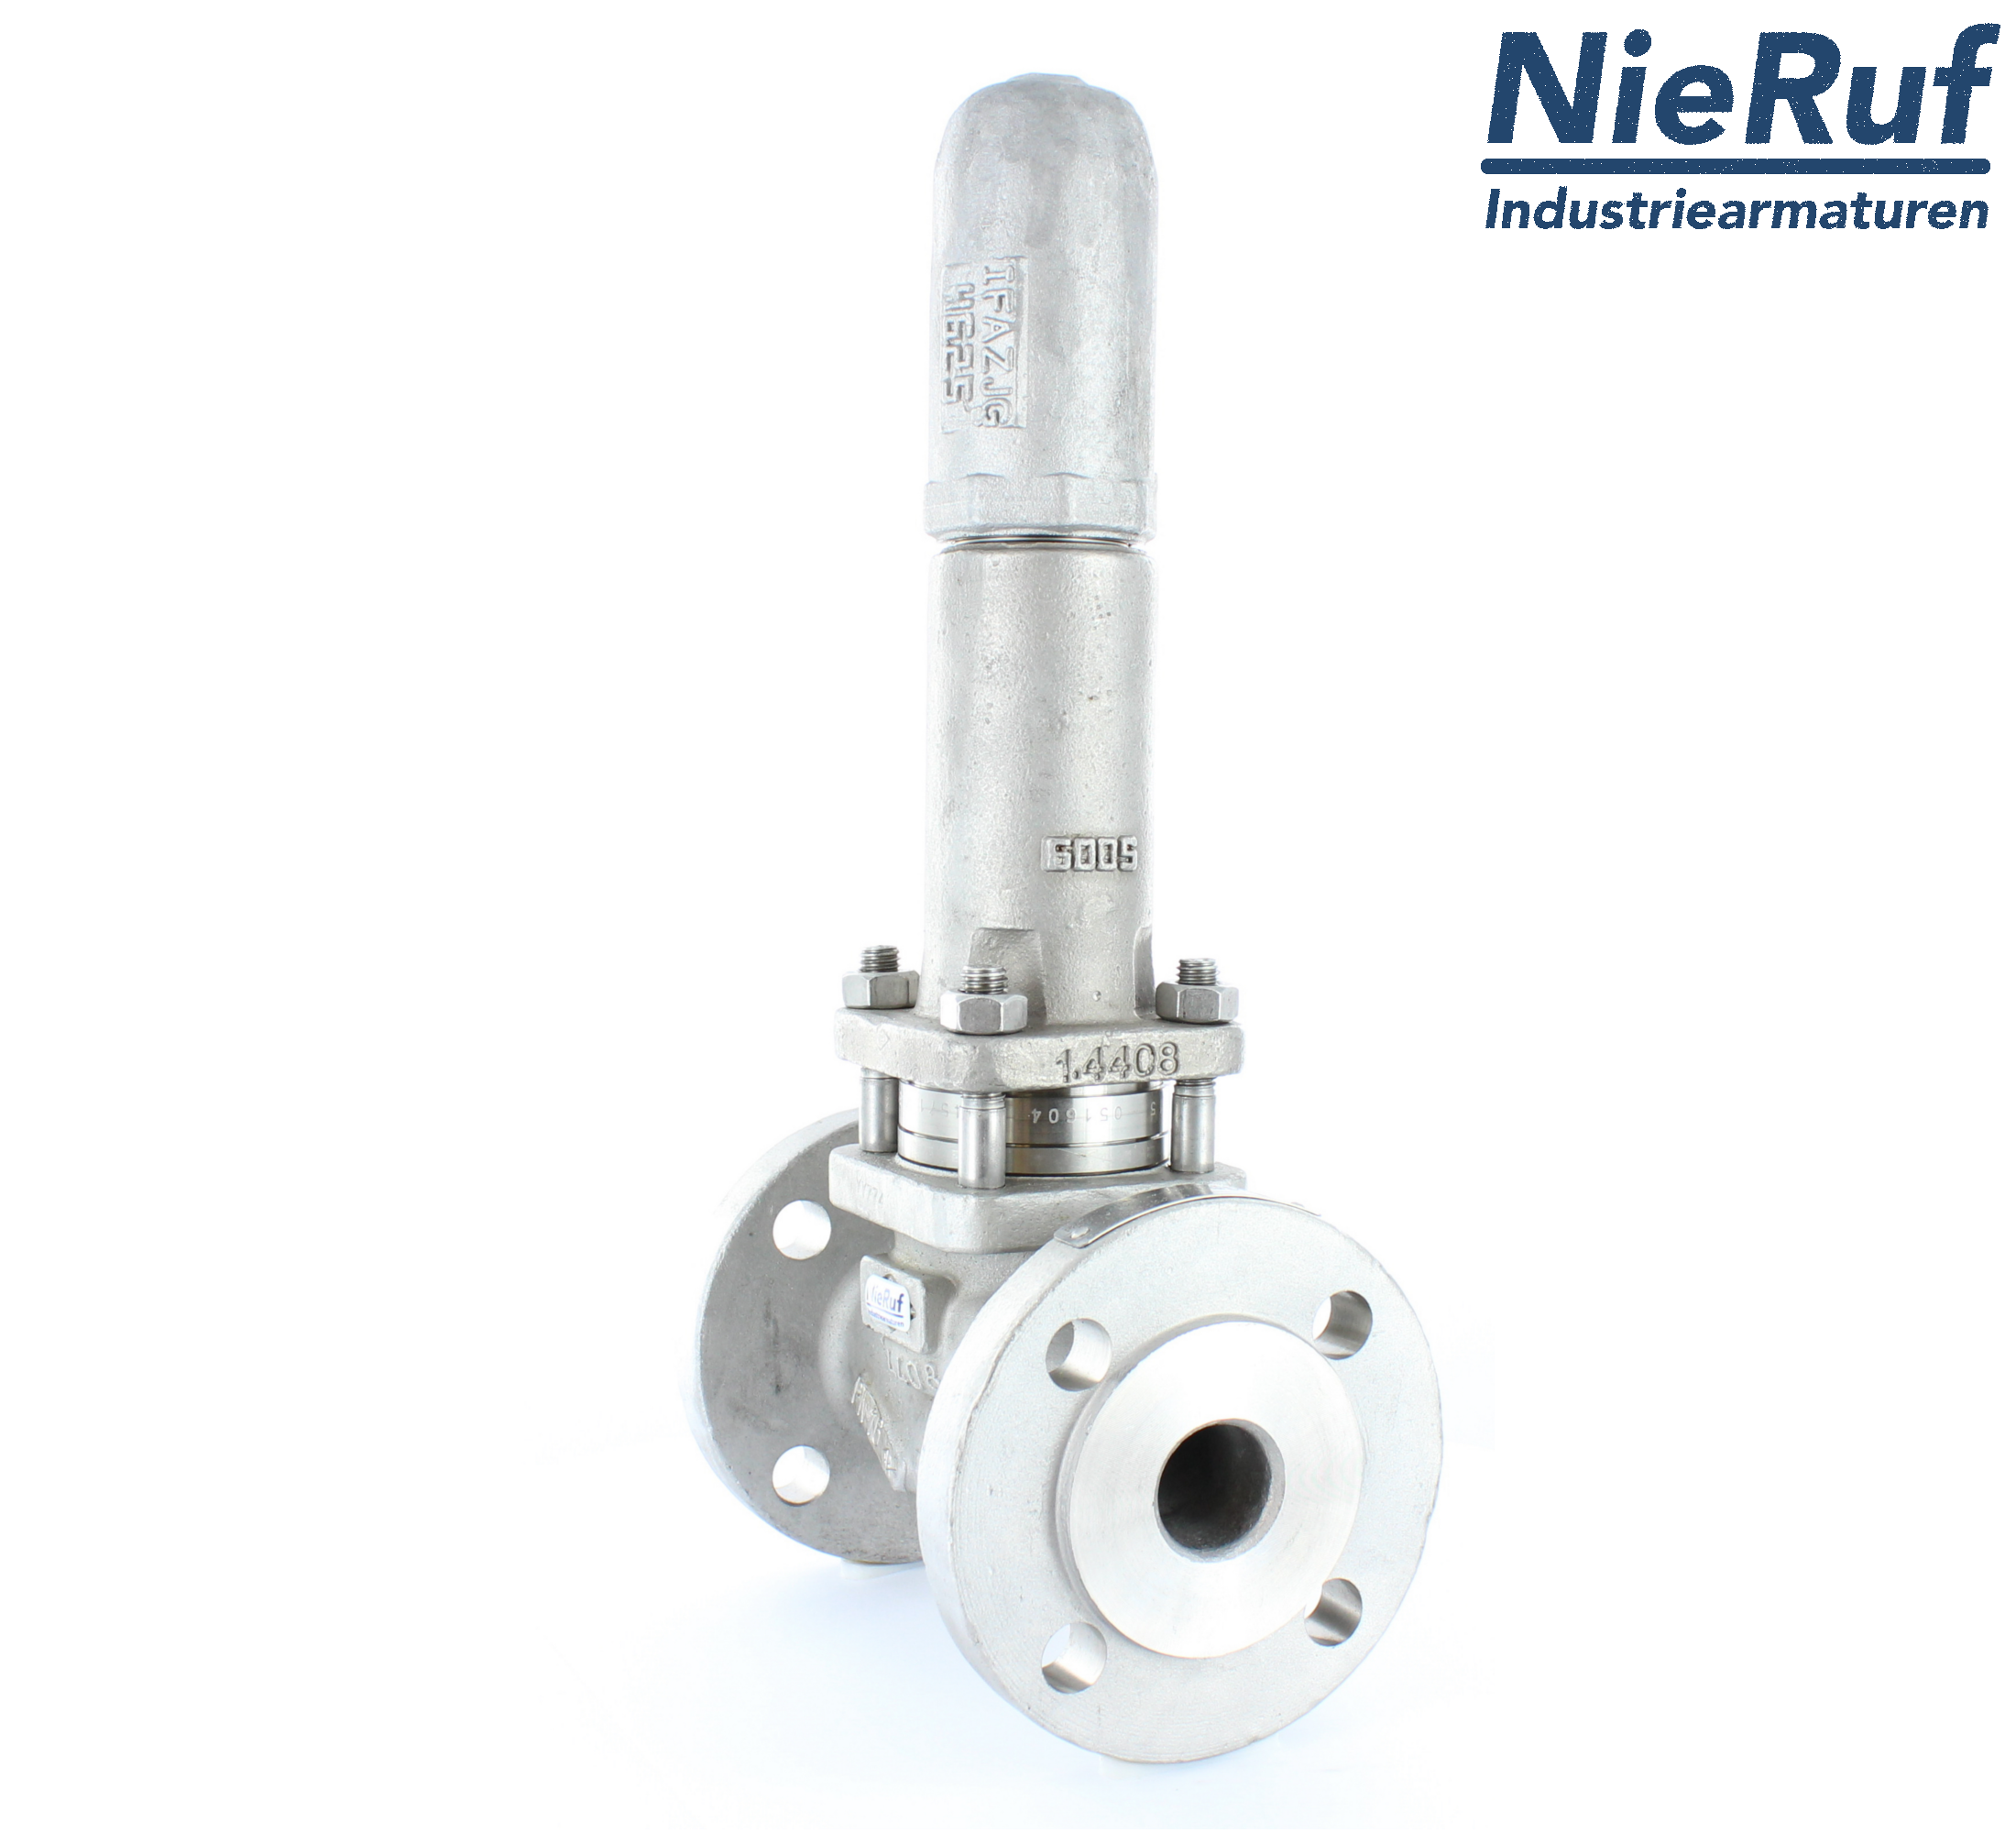 piston overflow valve DN 40 UV13 cast iron 1.0619+N 1,0 - 3,0 bar